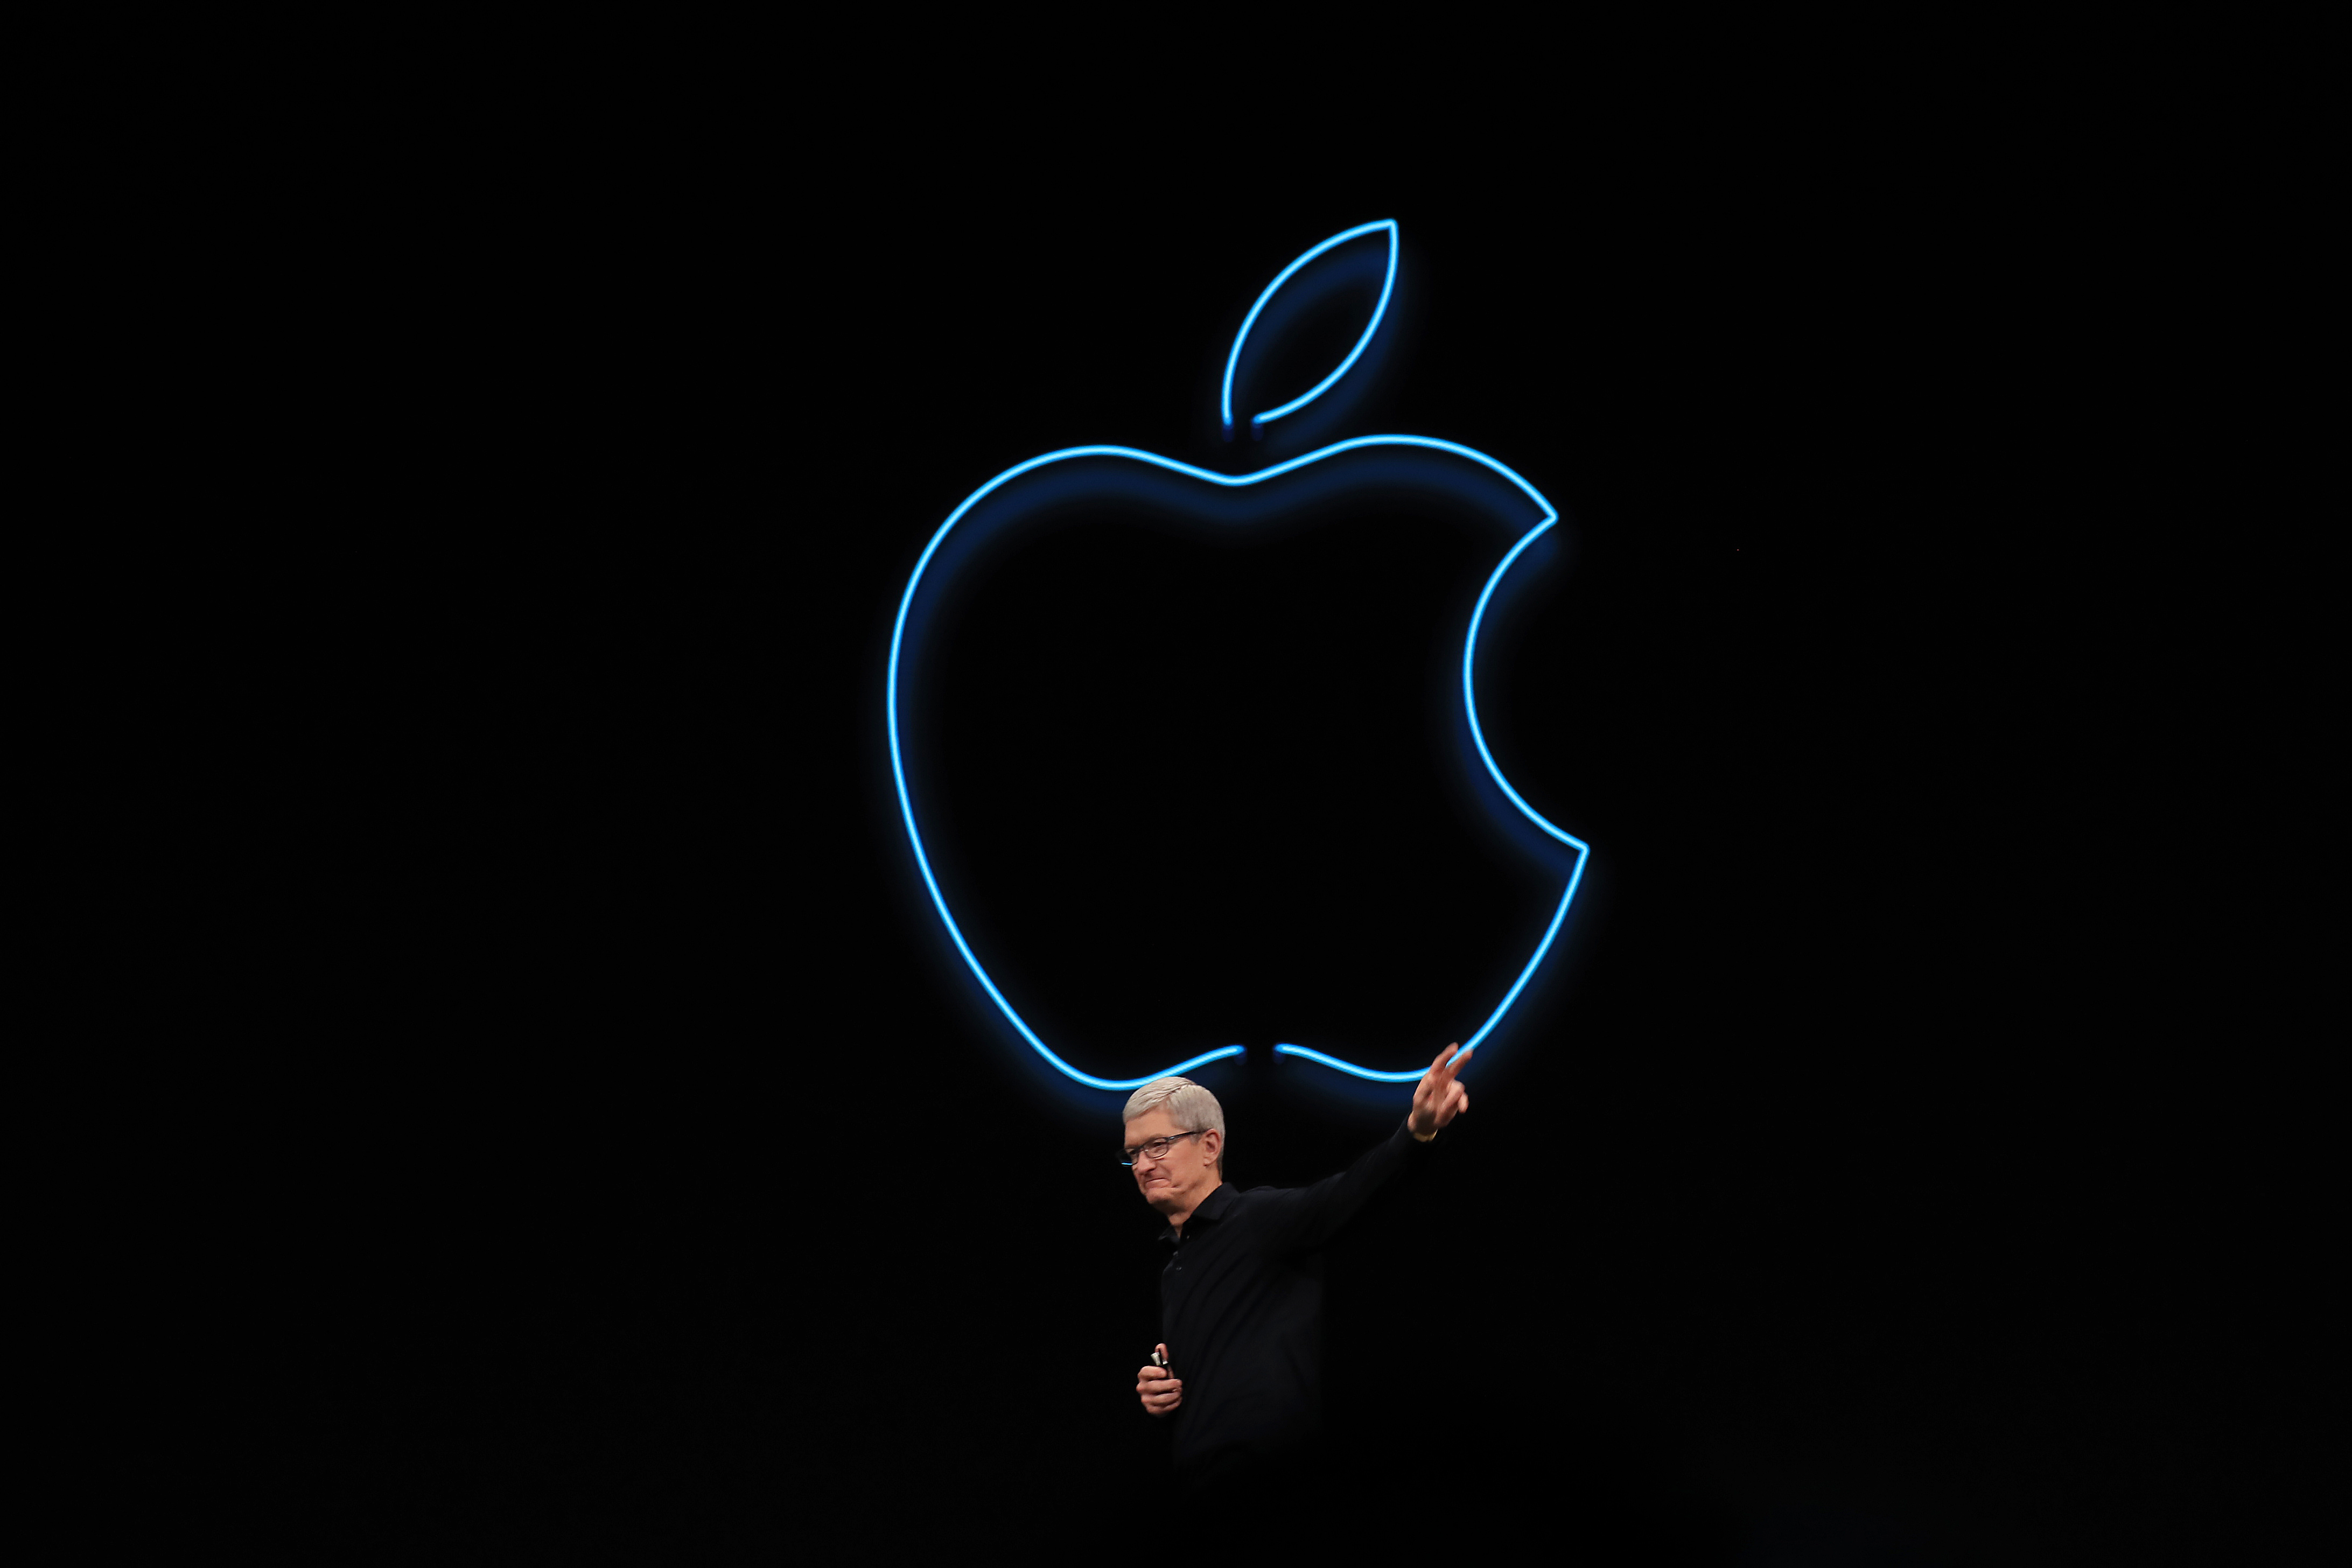 El director ejecutivo de Apple Tim Cook en el escenario en San José, California, el 3 de junio de 2019. (Foto Prensa Libre: Jim Wilson/The New York Times)